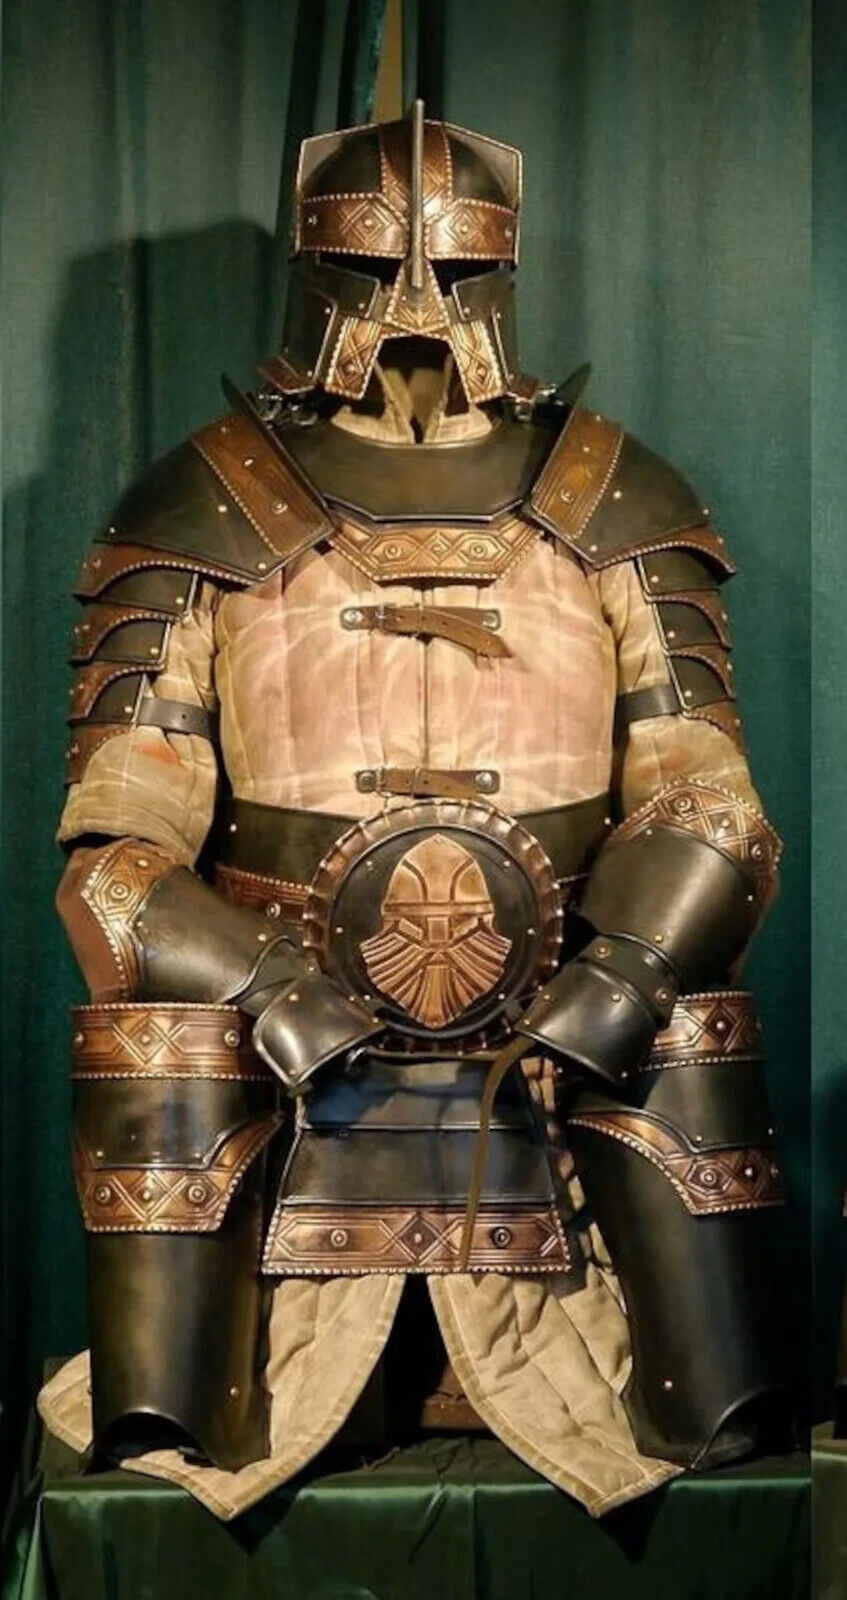 Moria Dwarves Full Armor Suit LOTR Armor Elven Elves Medieval Dwarves Armor Suit